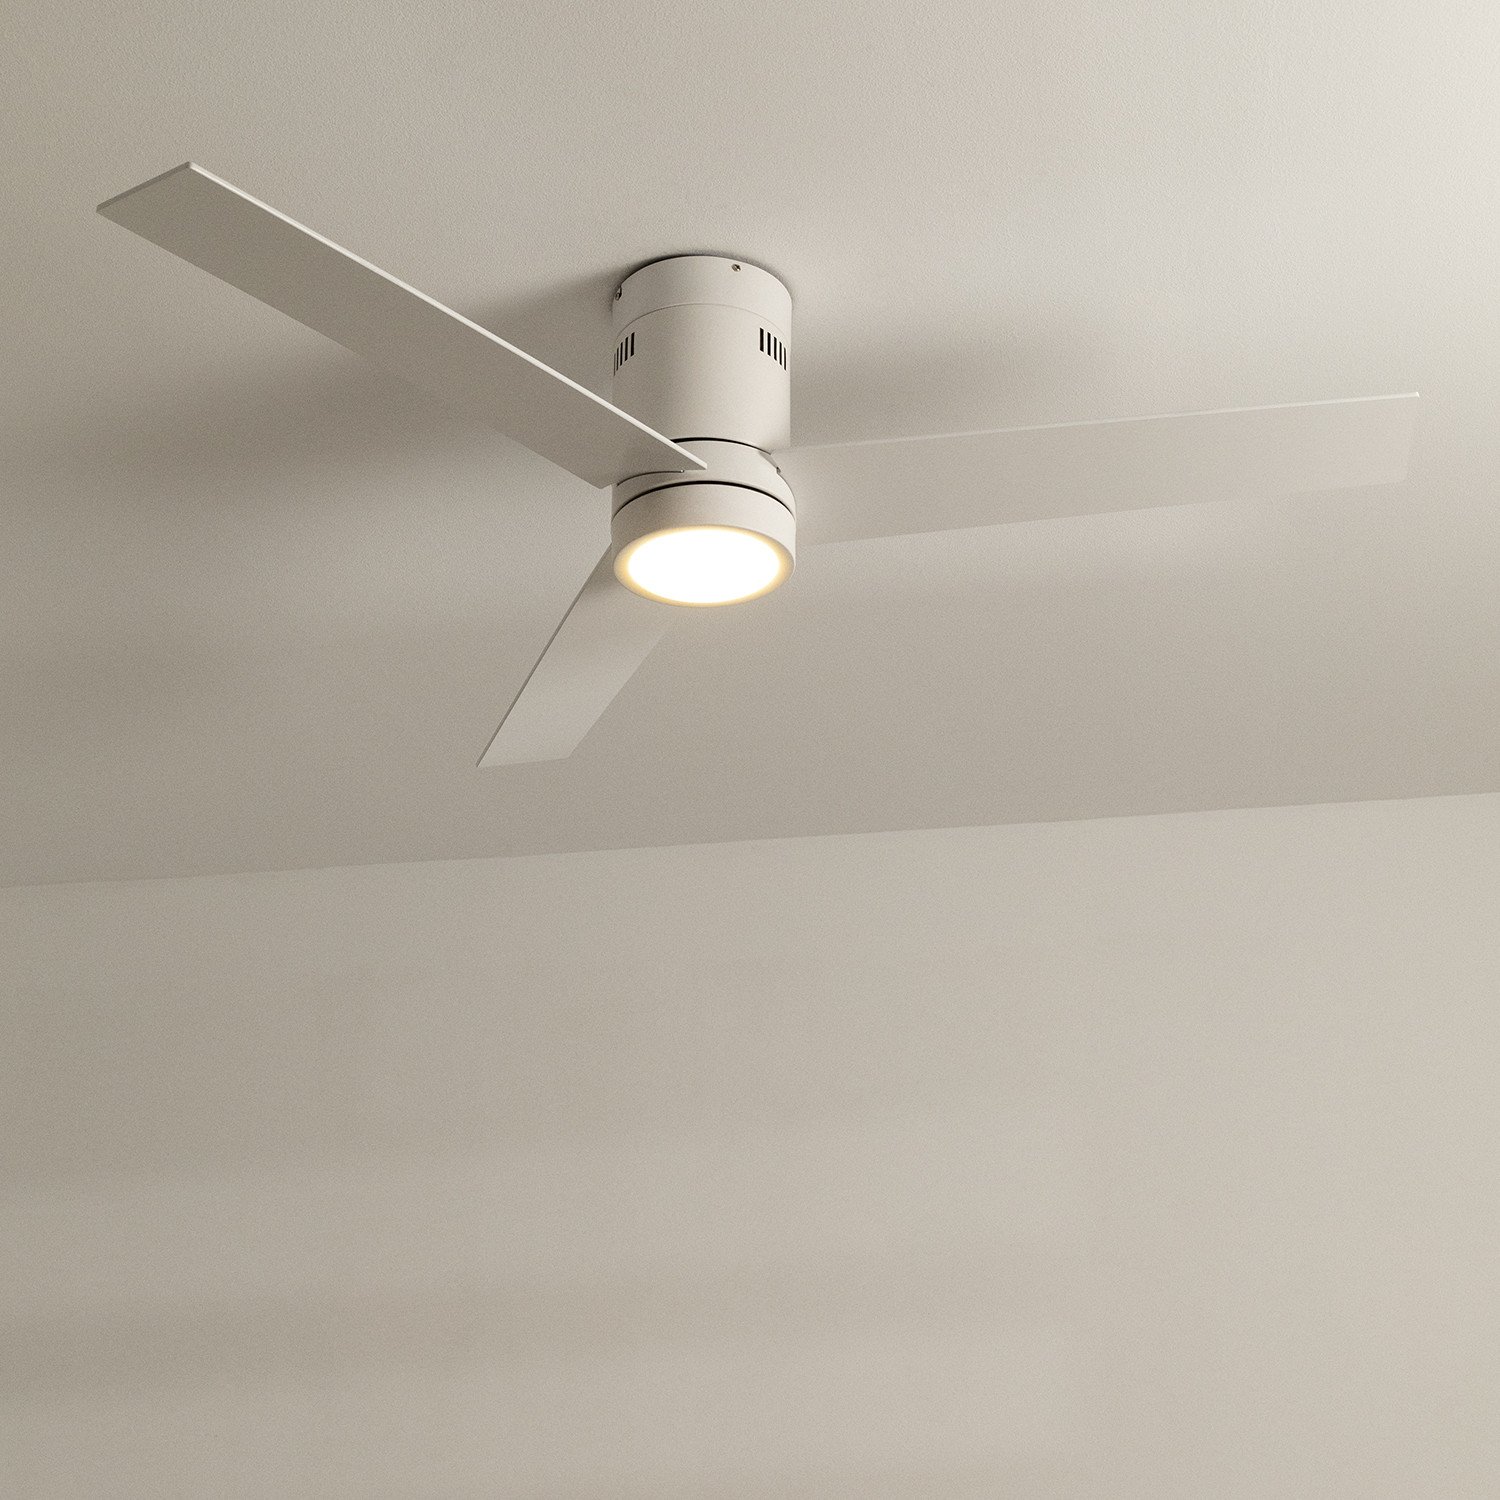 DEL Ventilateur plafond lampe télécommande bureau cuisine éclairage lumière Living-XXL 